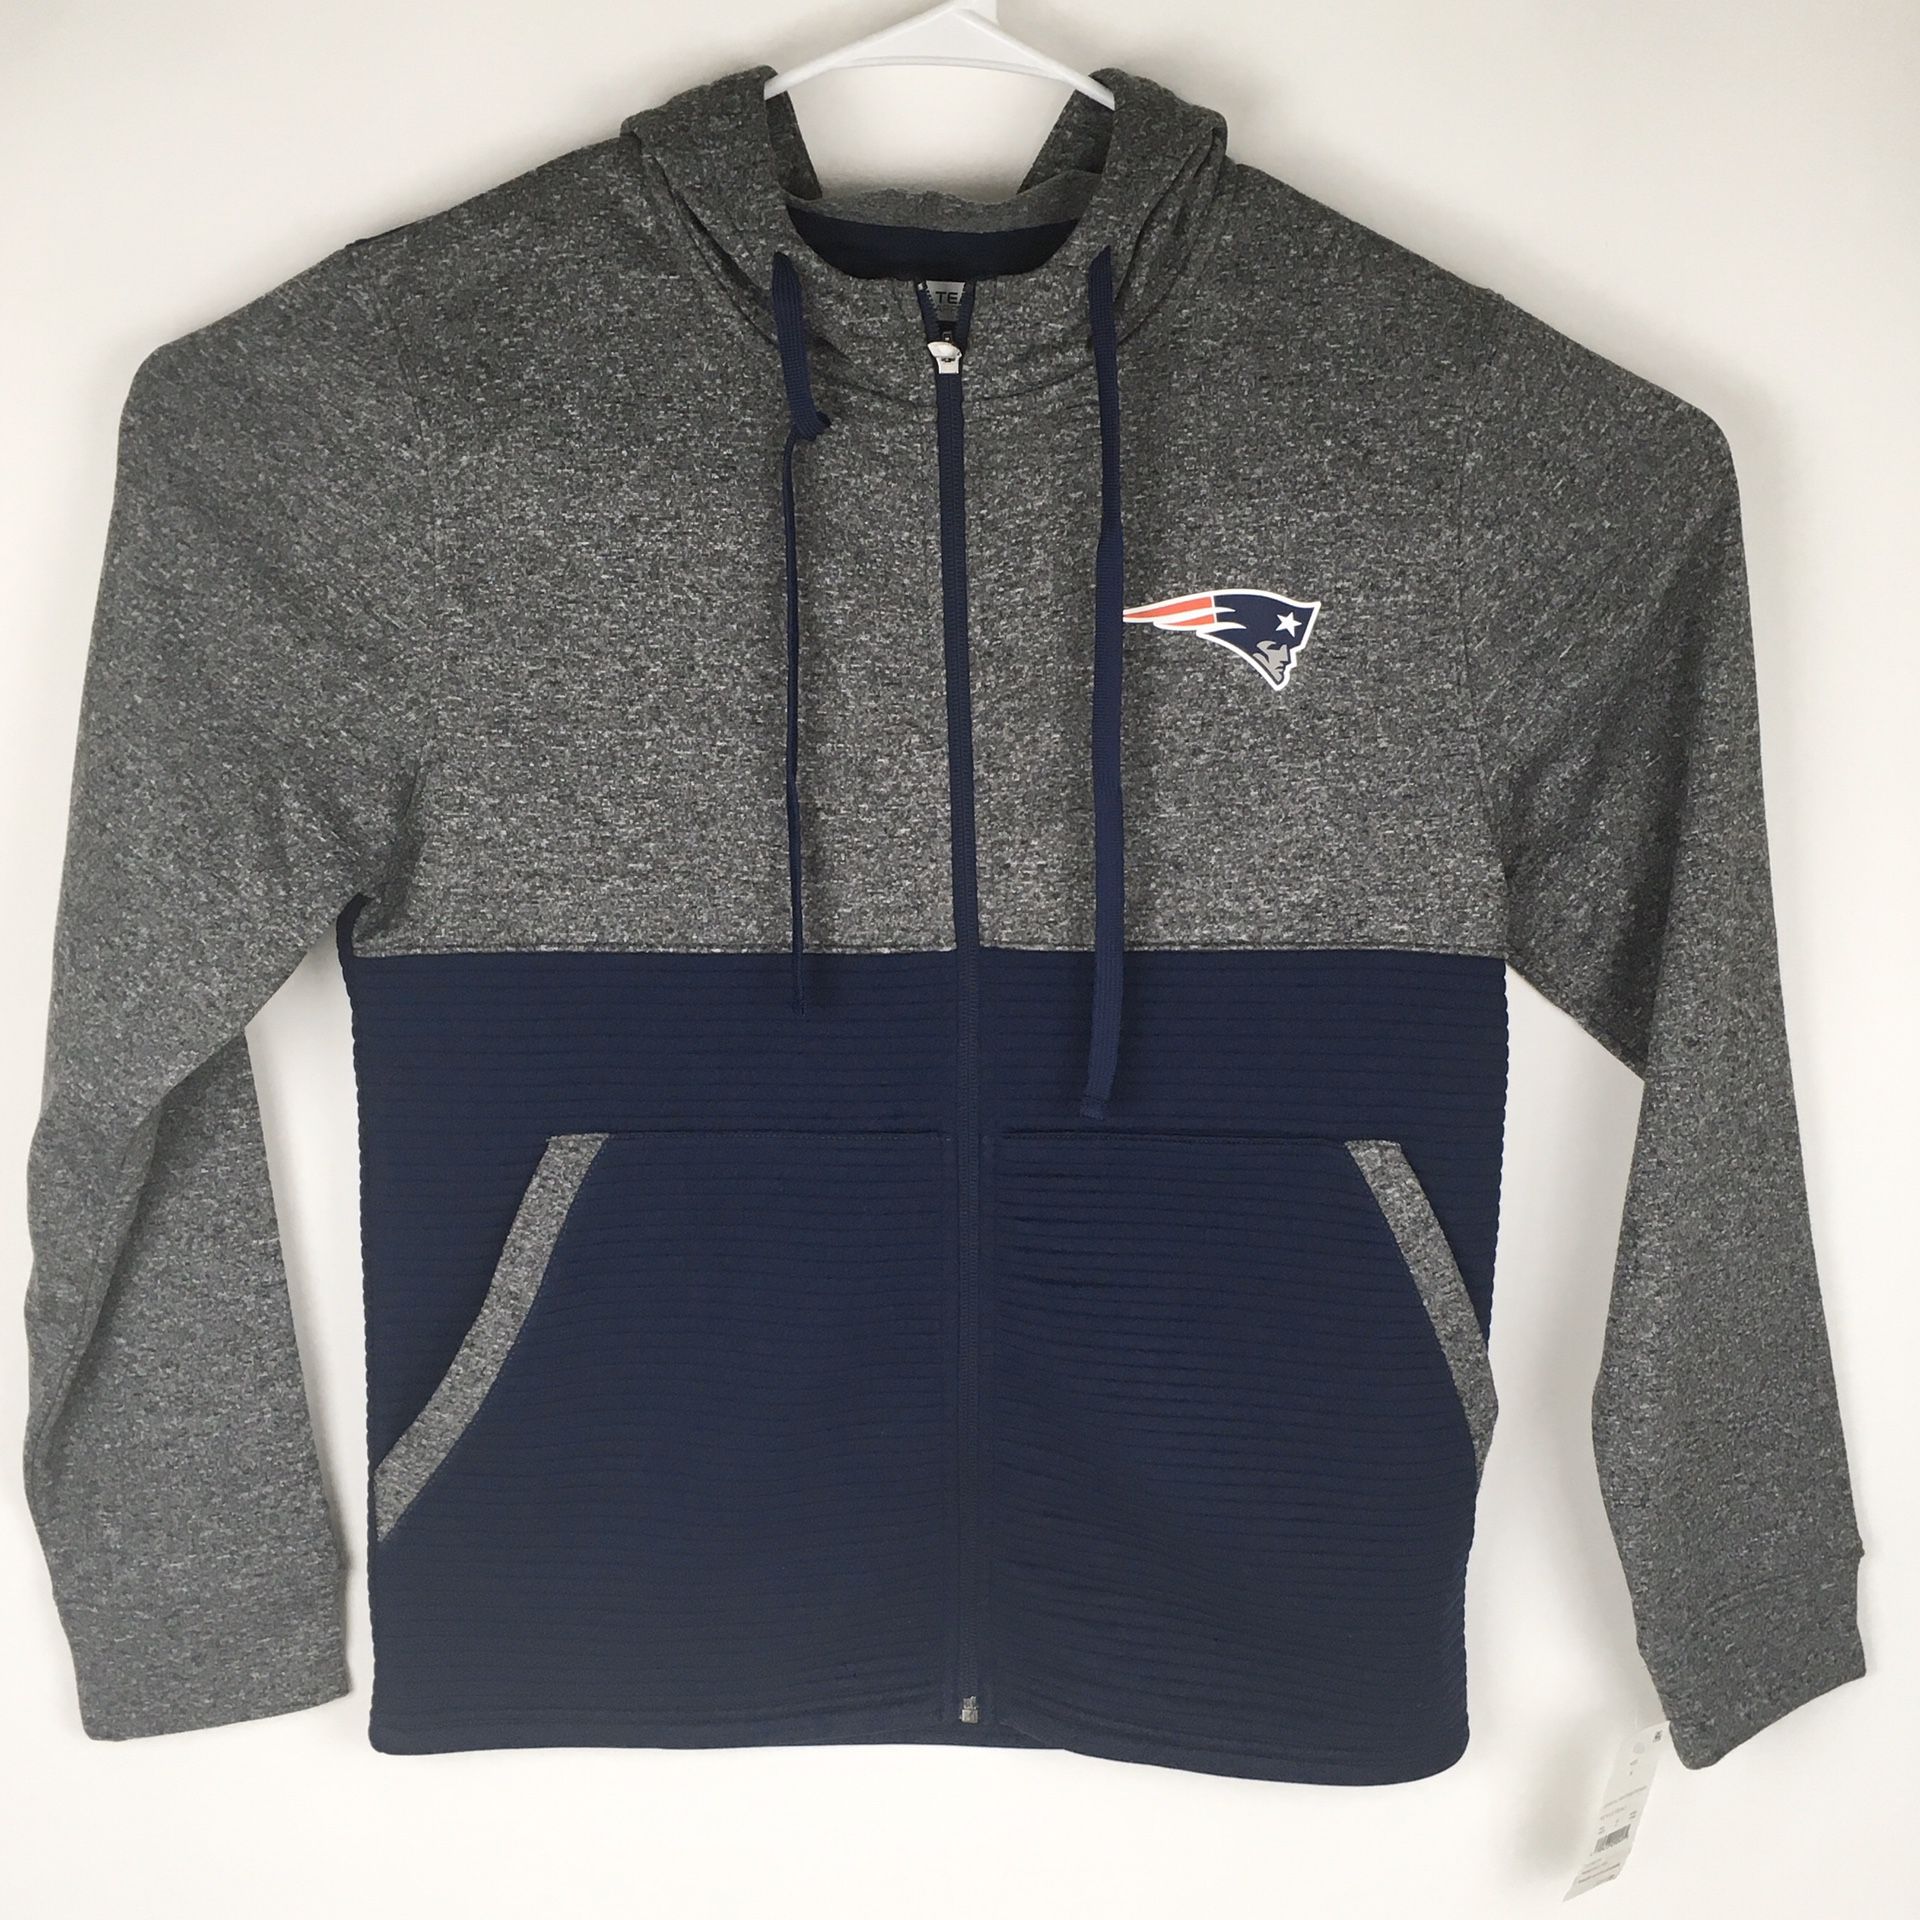 New Women’s Zip Up Fleece Sweatshirt With Hood NFL New England Patriots Small (Tarpon Springs)